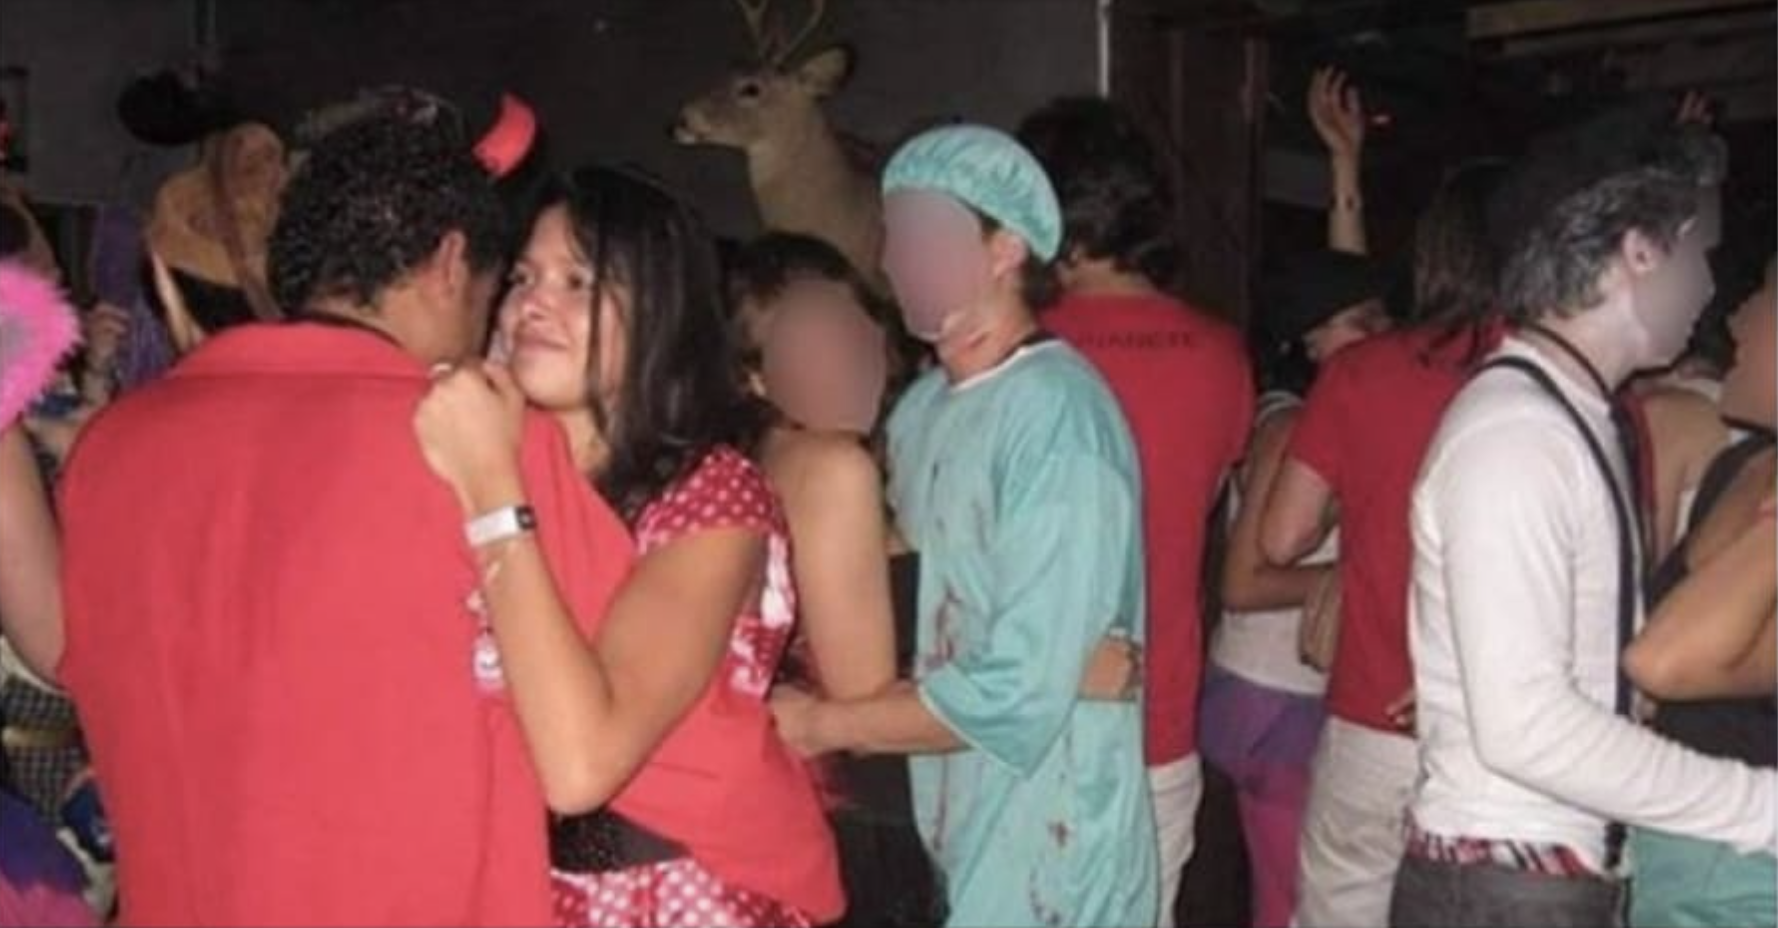 Imagen de Facebook de la fiesta del 31 de octubre de 2010. Se ve en la imagen a Luis Andrés Colmenares bailando con Laura Moreno